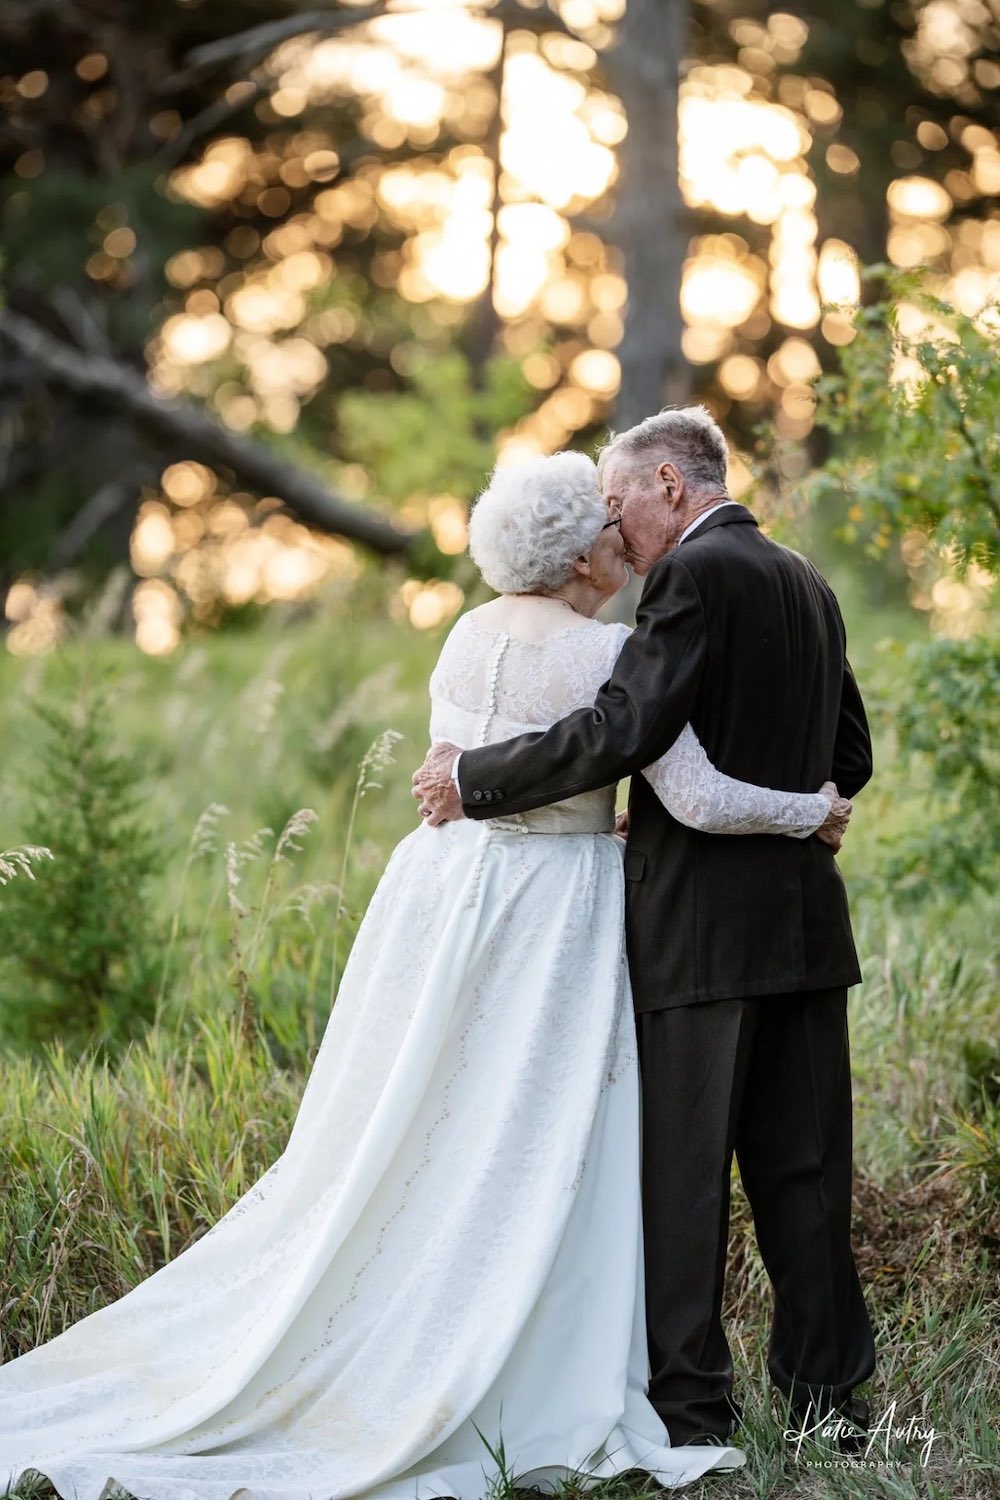 Touchant : ils soulignent leur 60e anniversaire dans leurs tenues de mariage originales